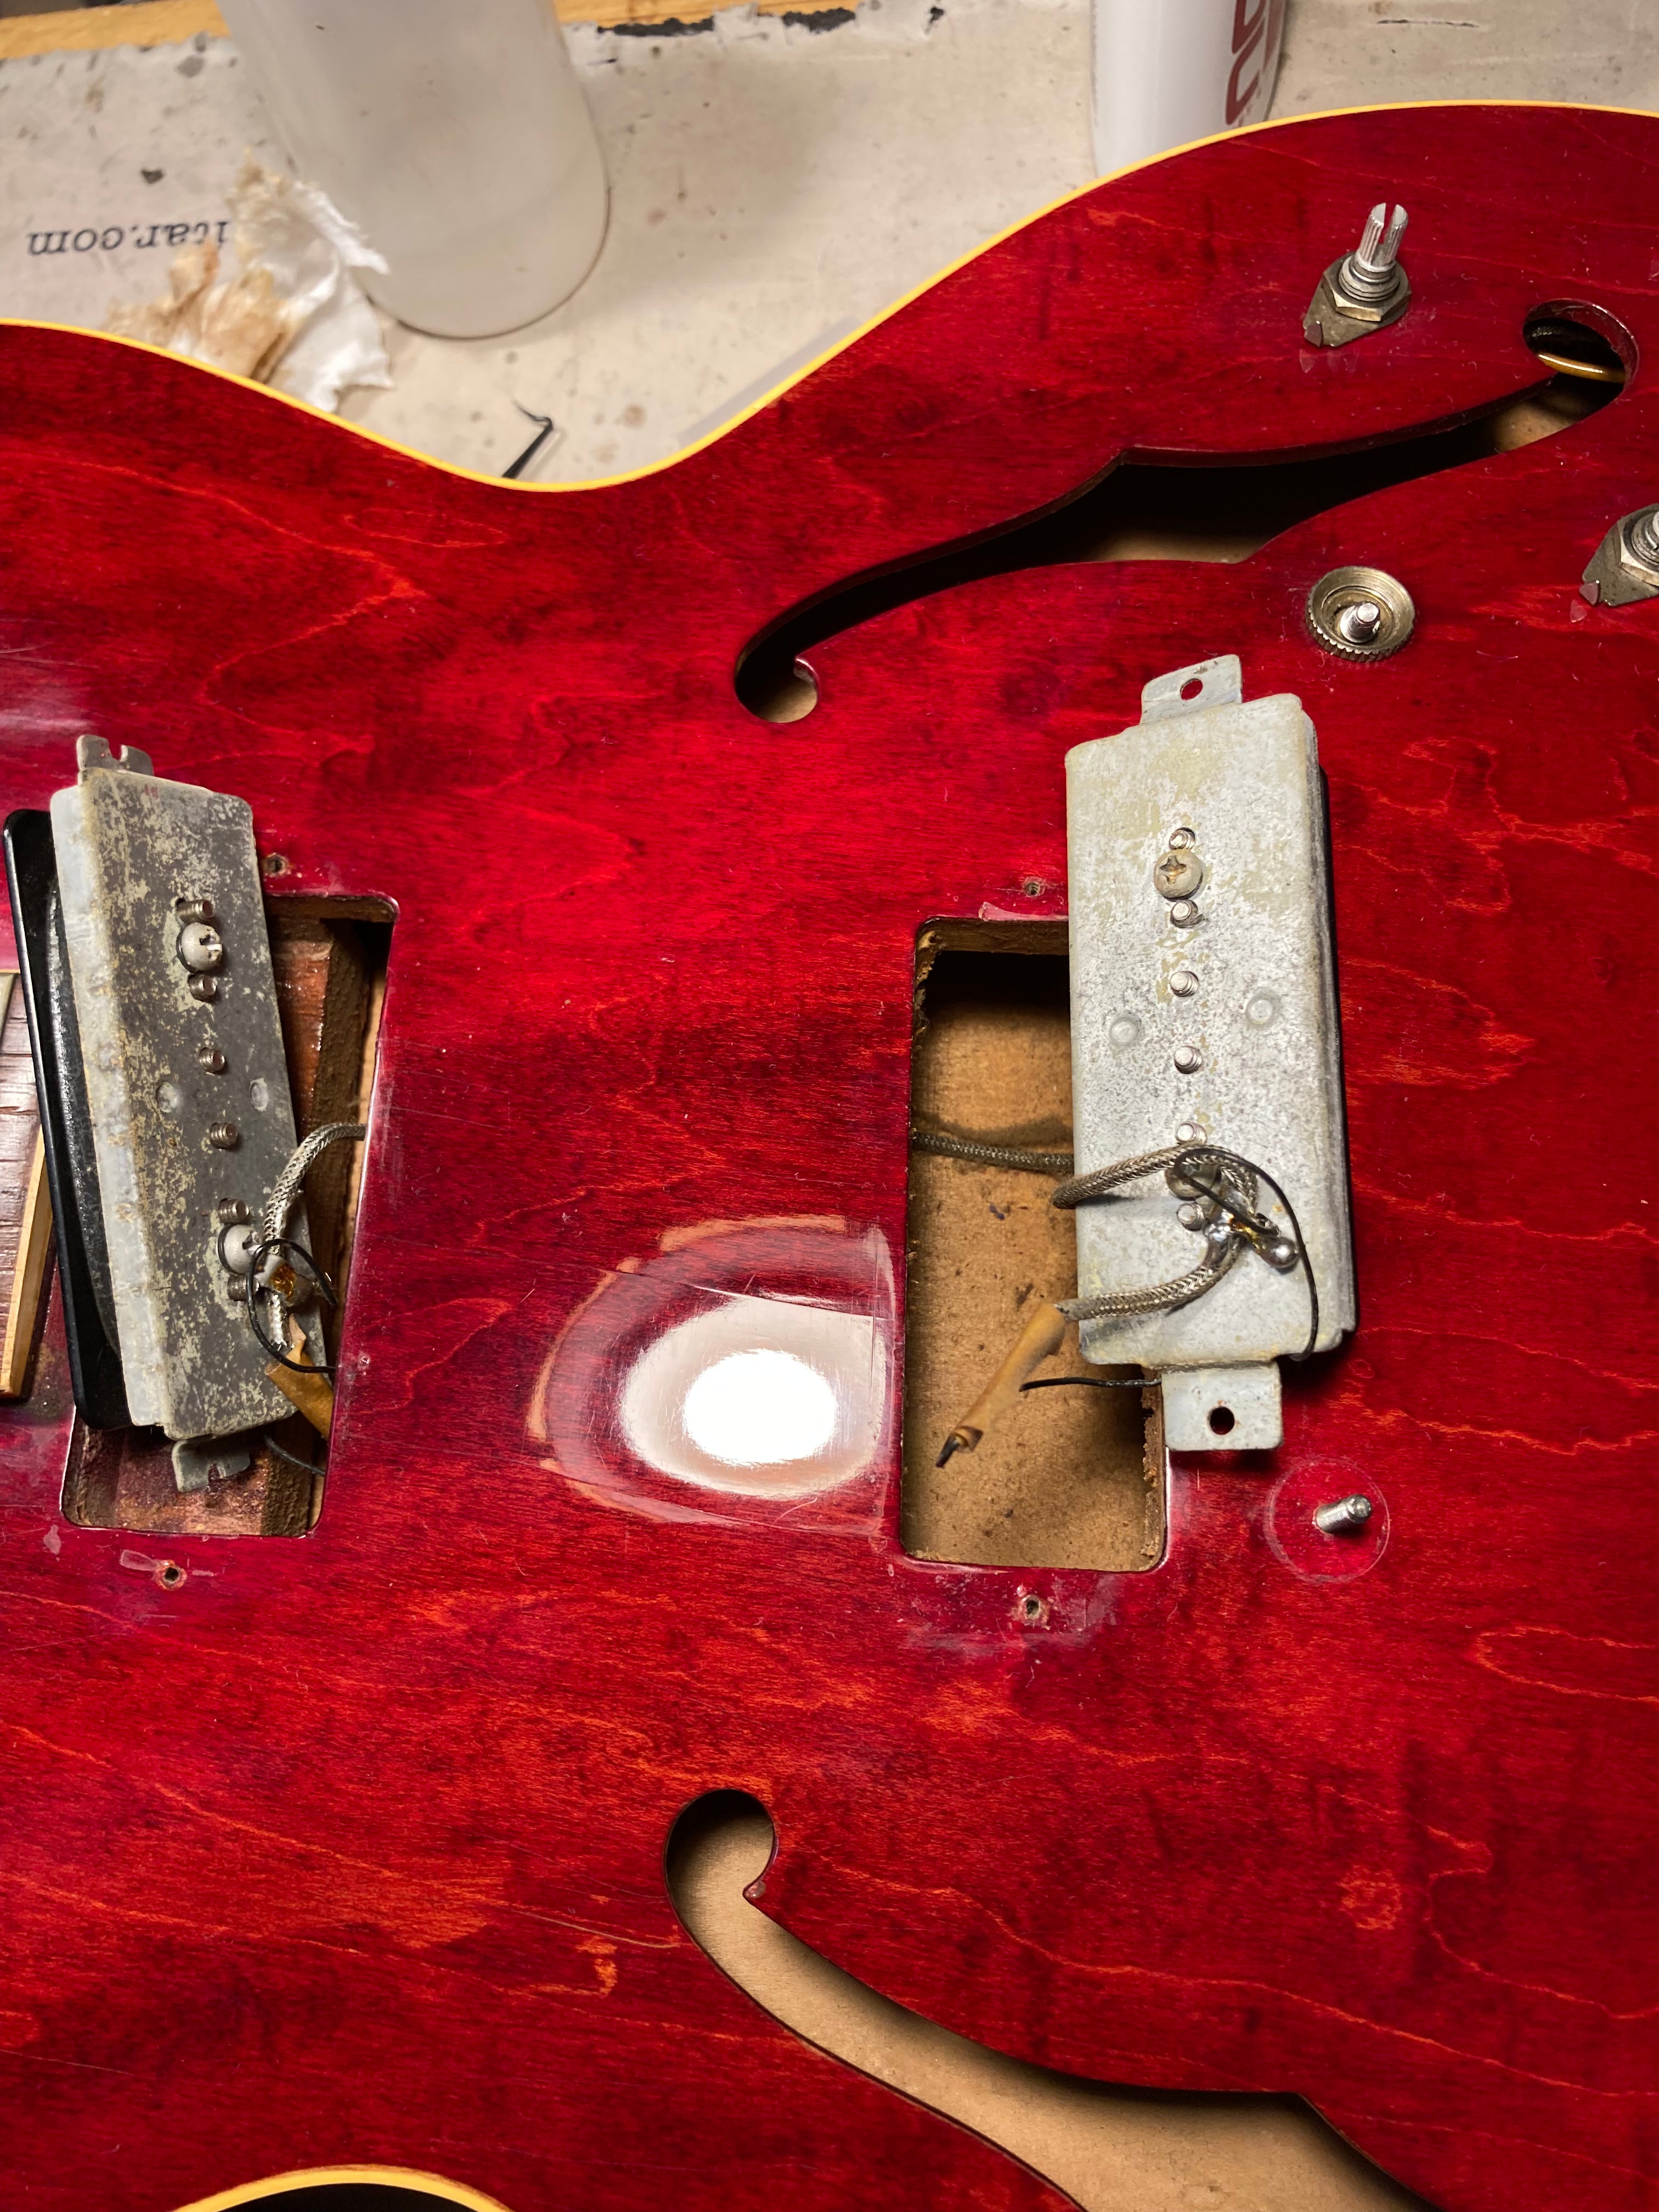 Gibson 1961 ES-330 Cherry